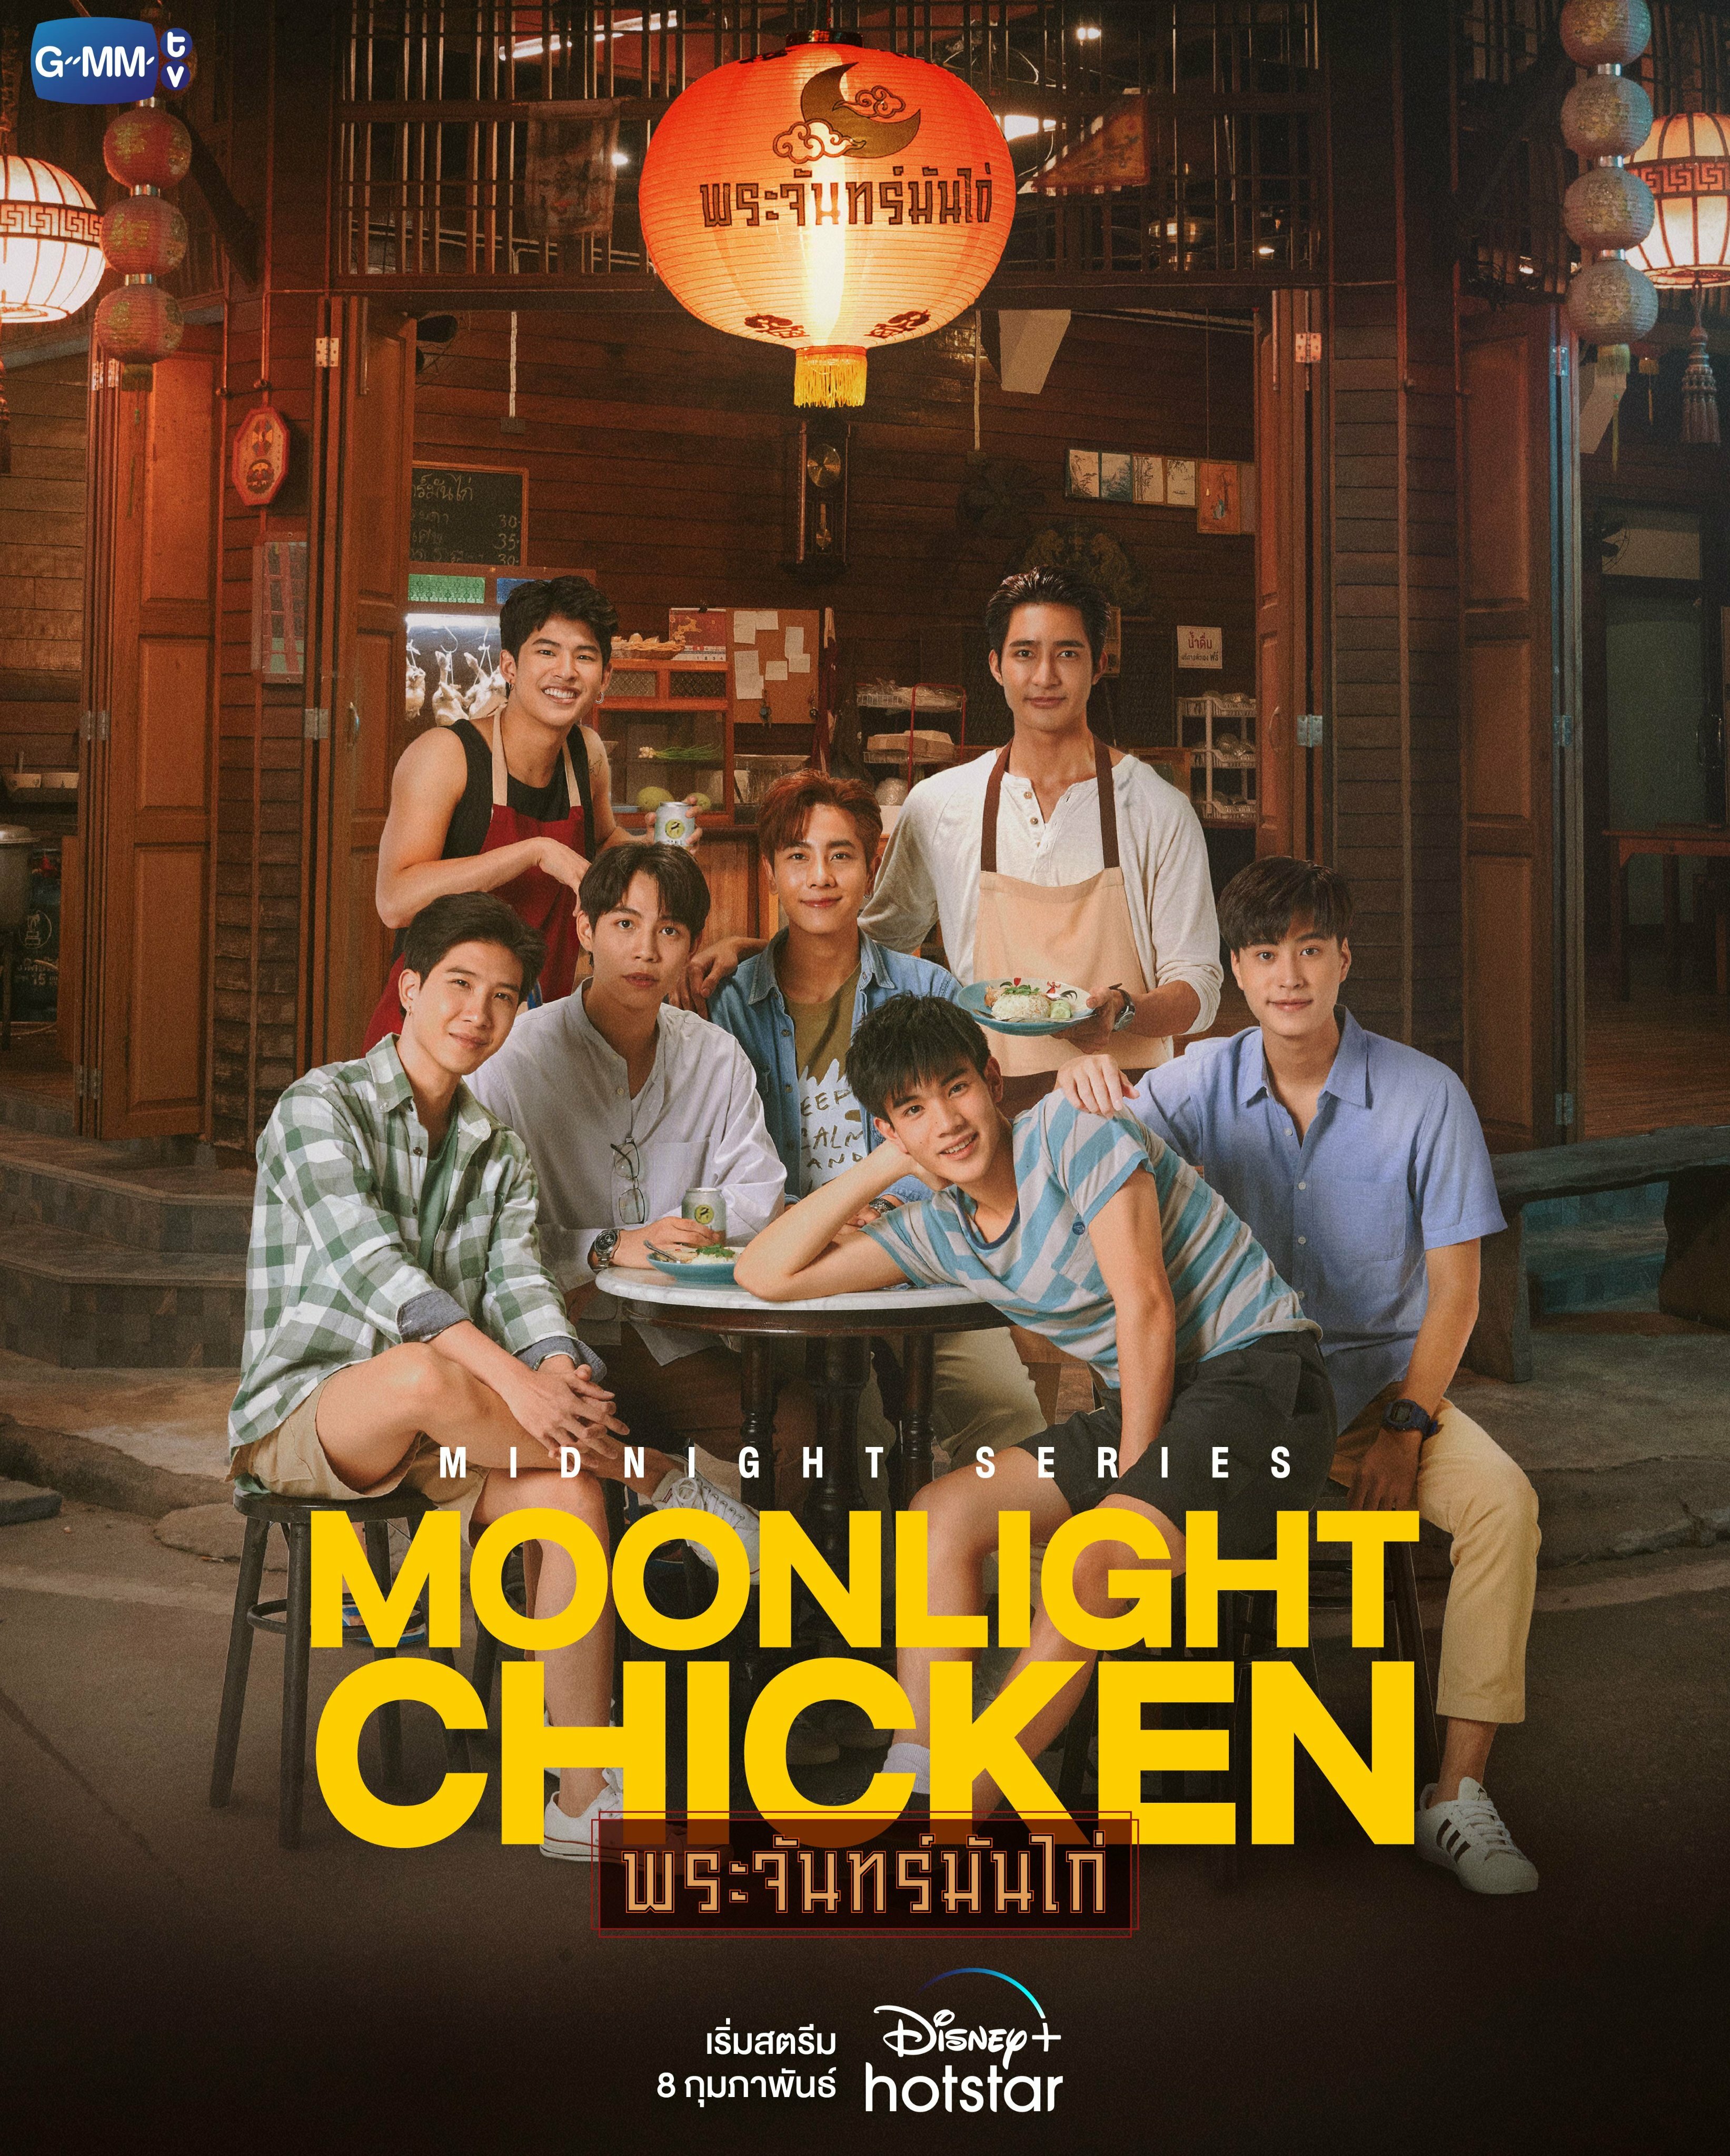 Moonlight Chicken ne zaman